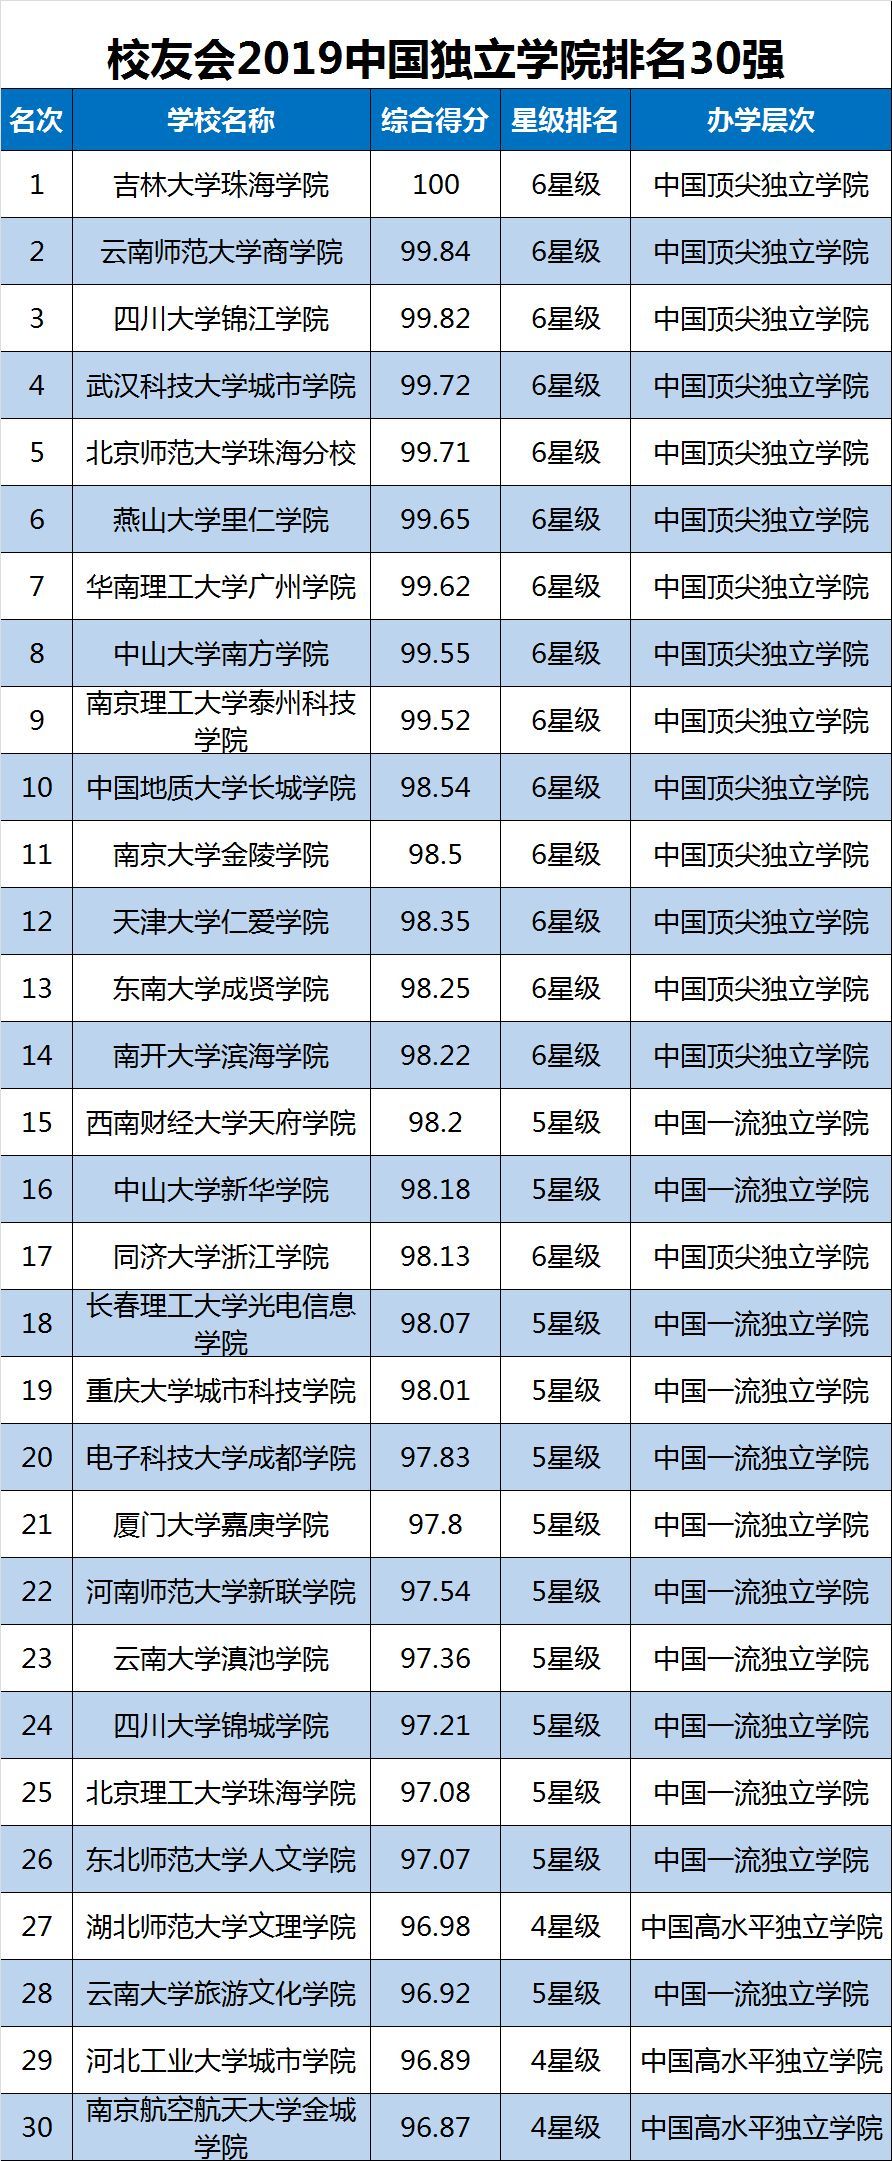 关于中国大学排名